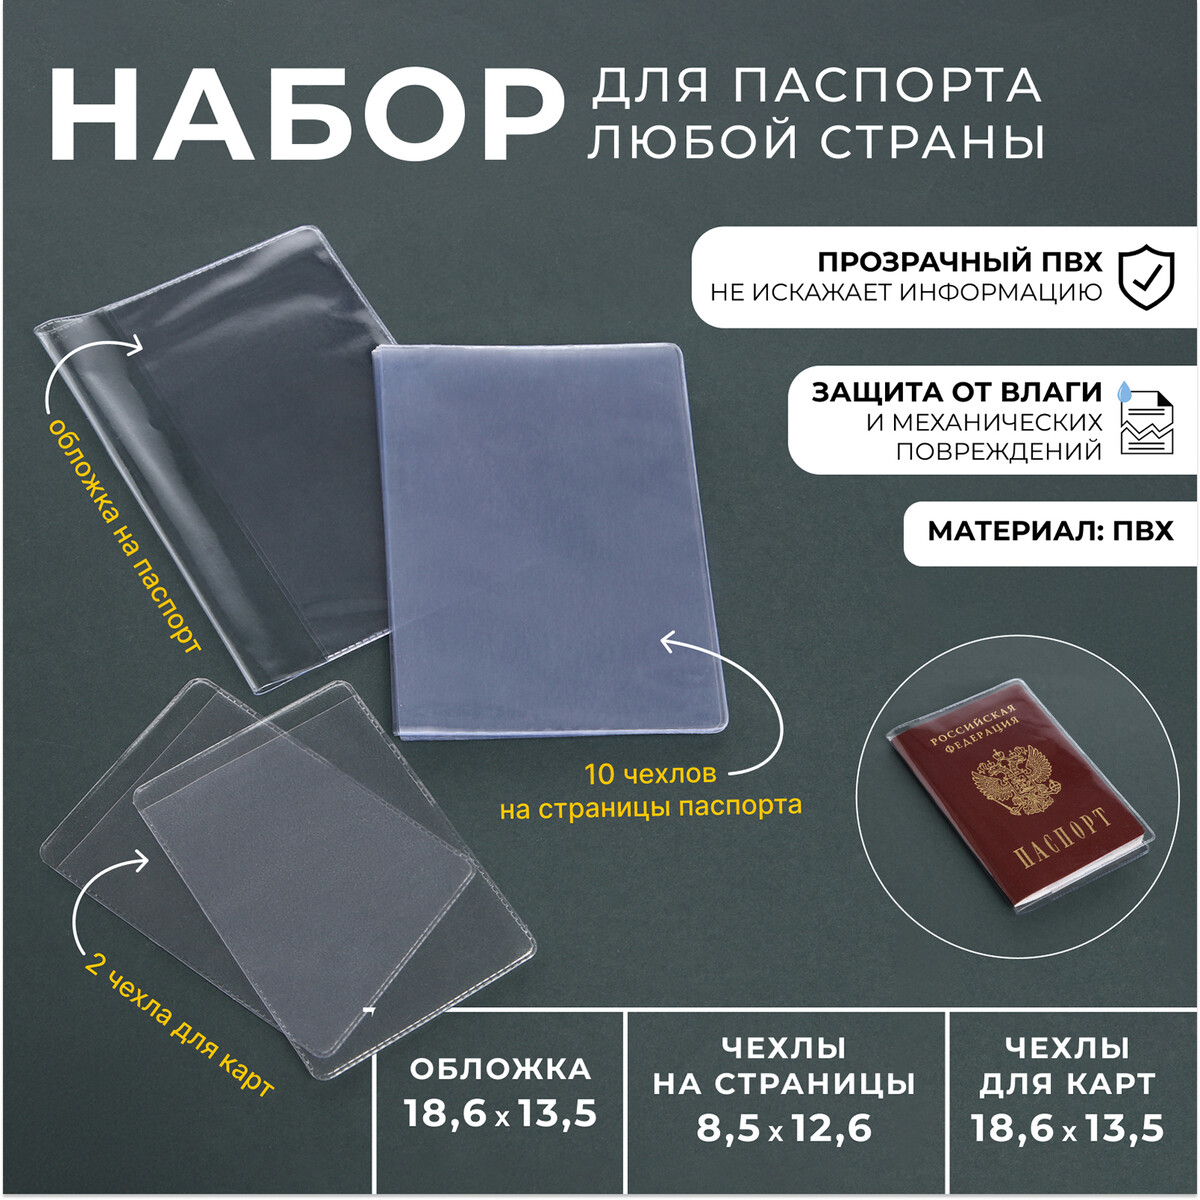 Набор для паспорта: обложка на паспорт; 10 чехлов на страницы паспорта, 2 чехла для карт, цвет прозрачный набор чехлов прогулочного блока для коляски priam iv peach pink cybex